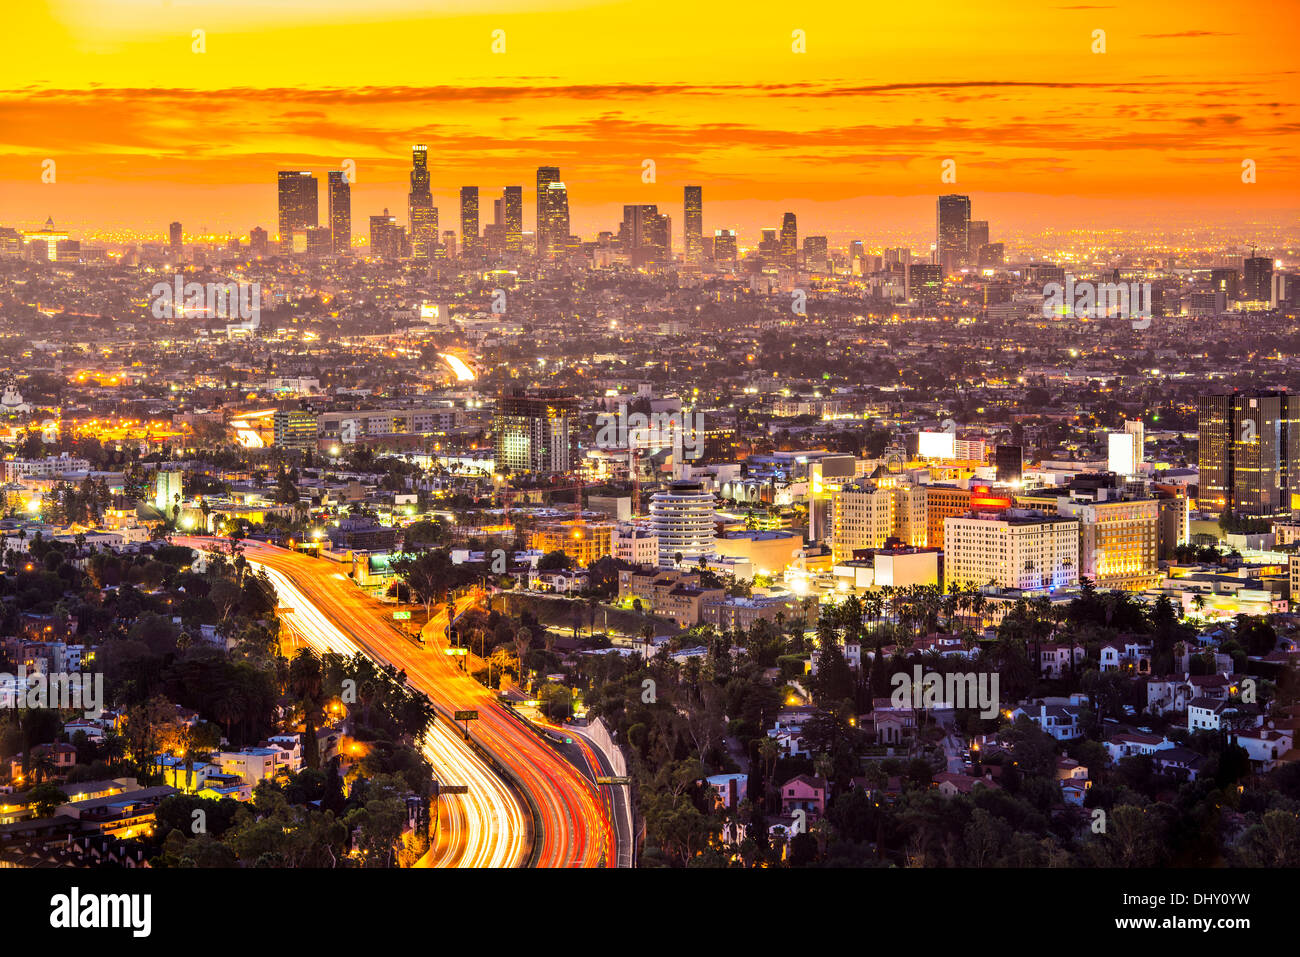 Le centre-ville de Los Angeles, Californie, USA Skyline à l'aube. Banque D'Images